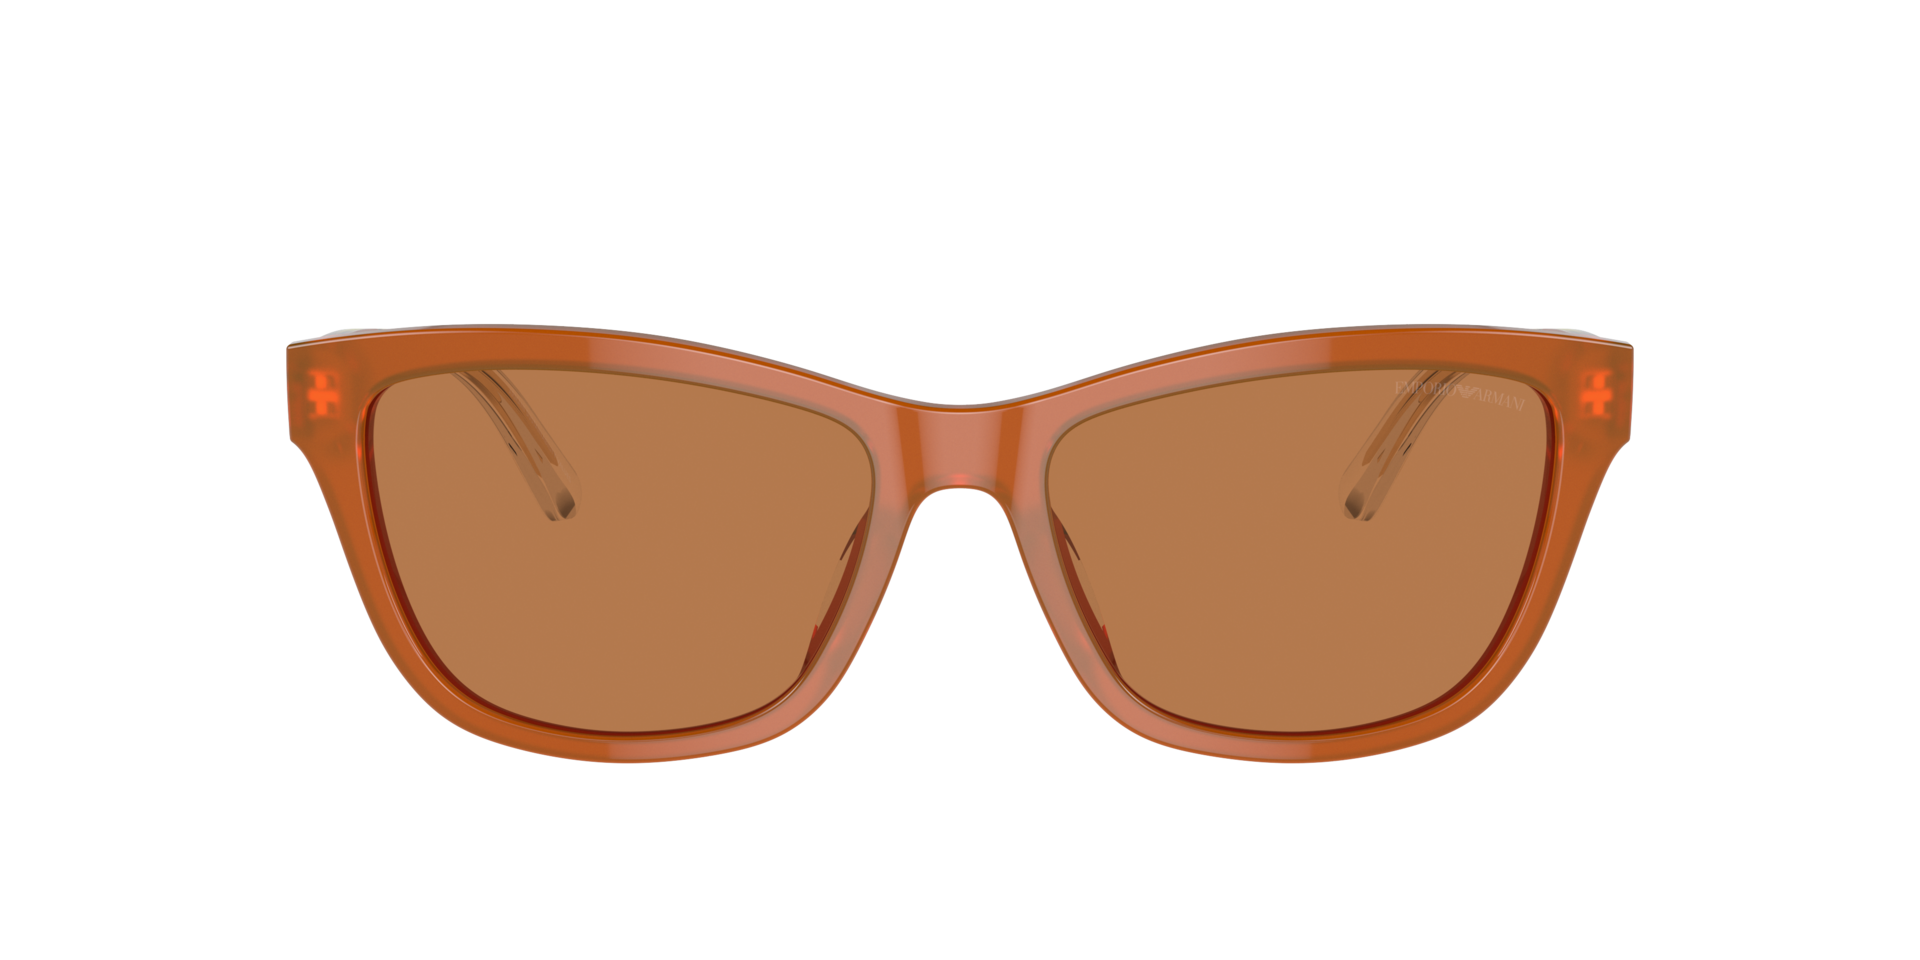 Das Bild zeigt die Sonnenbrille EA4227U 609773 von der Marke Emporio Armani in orange.